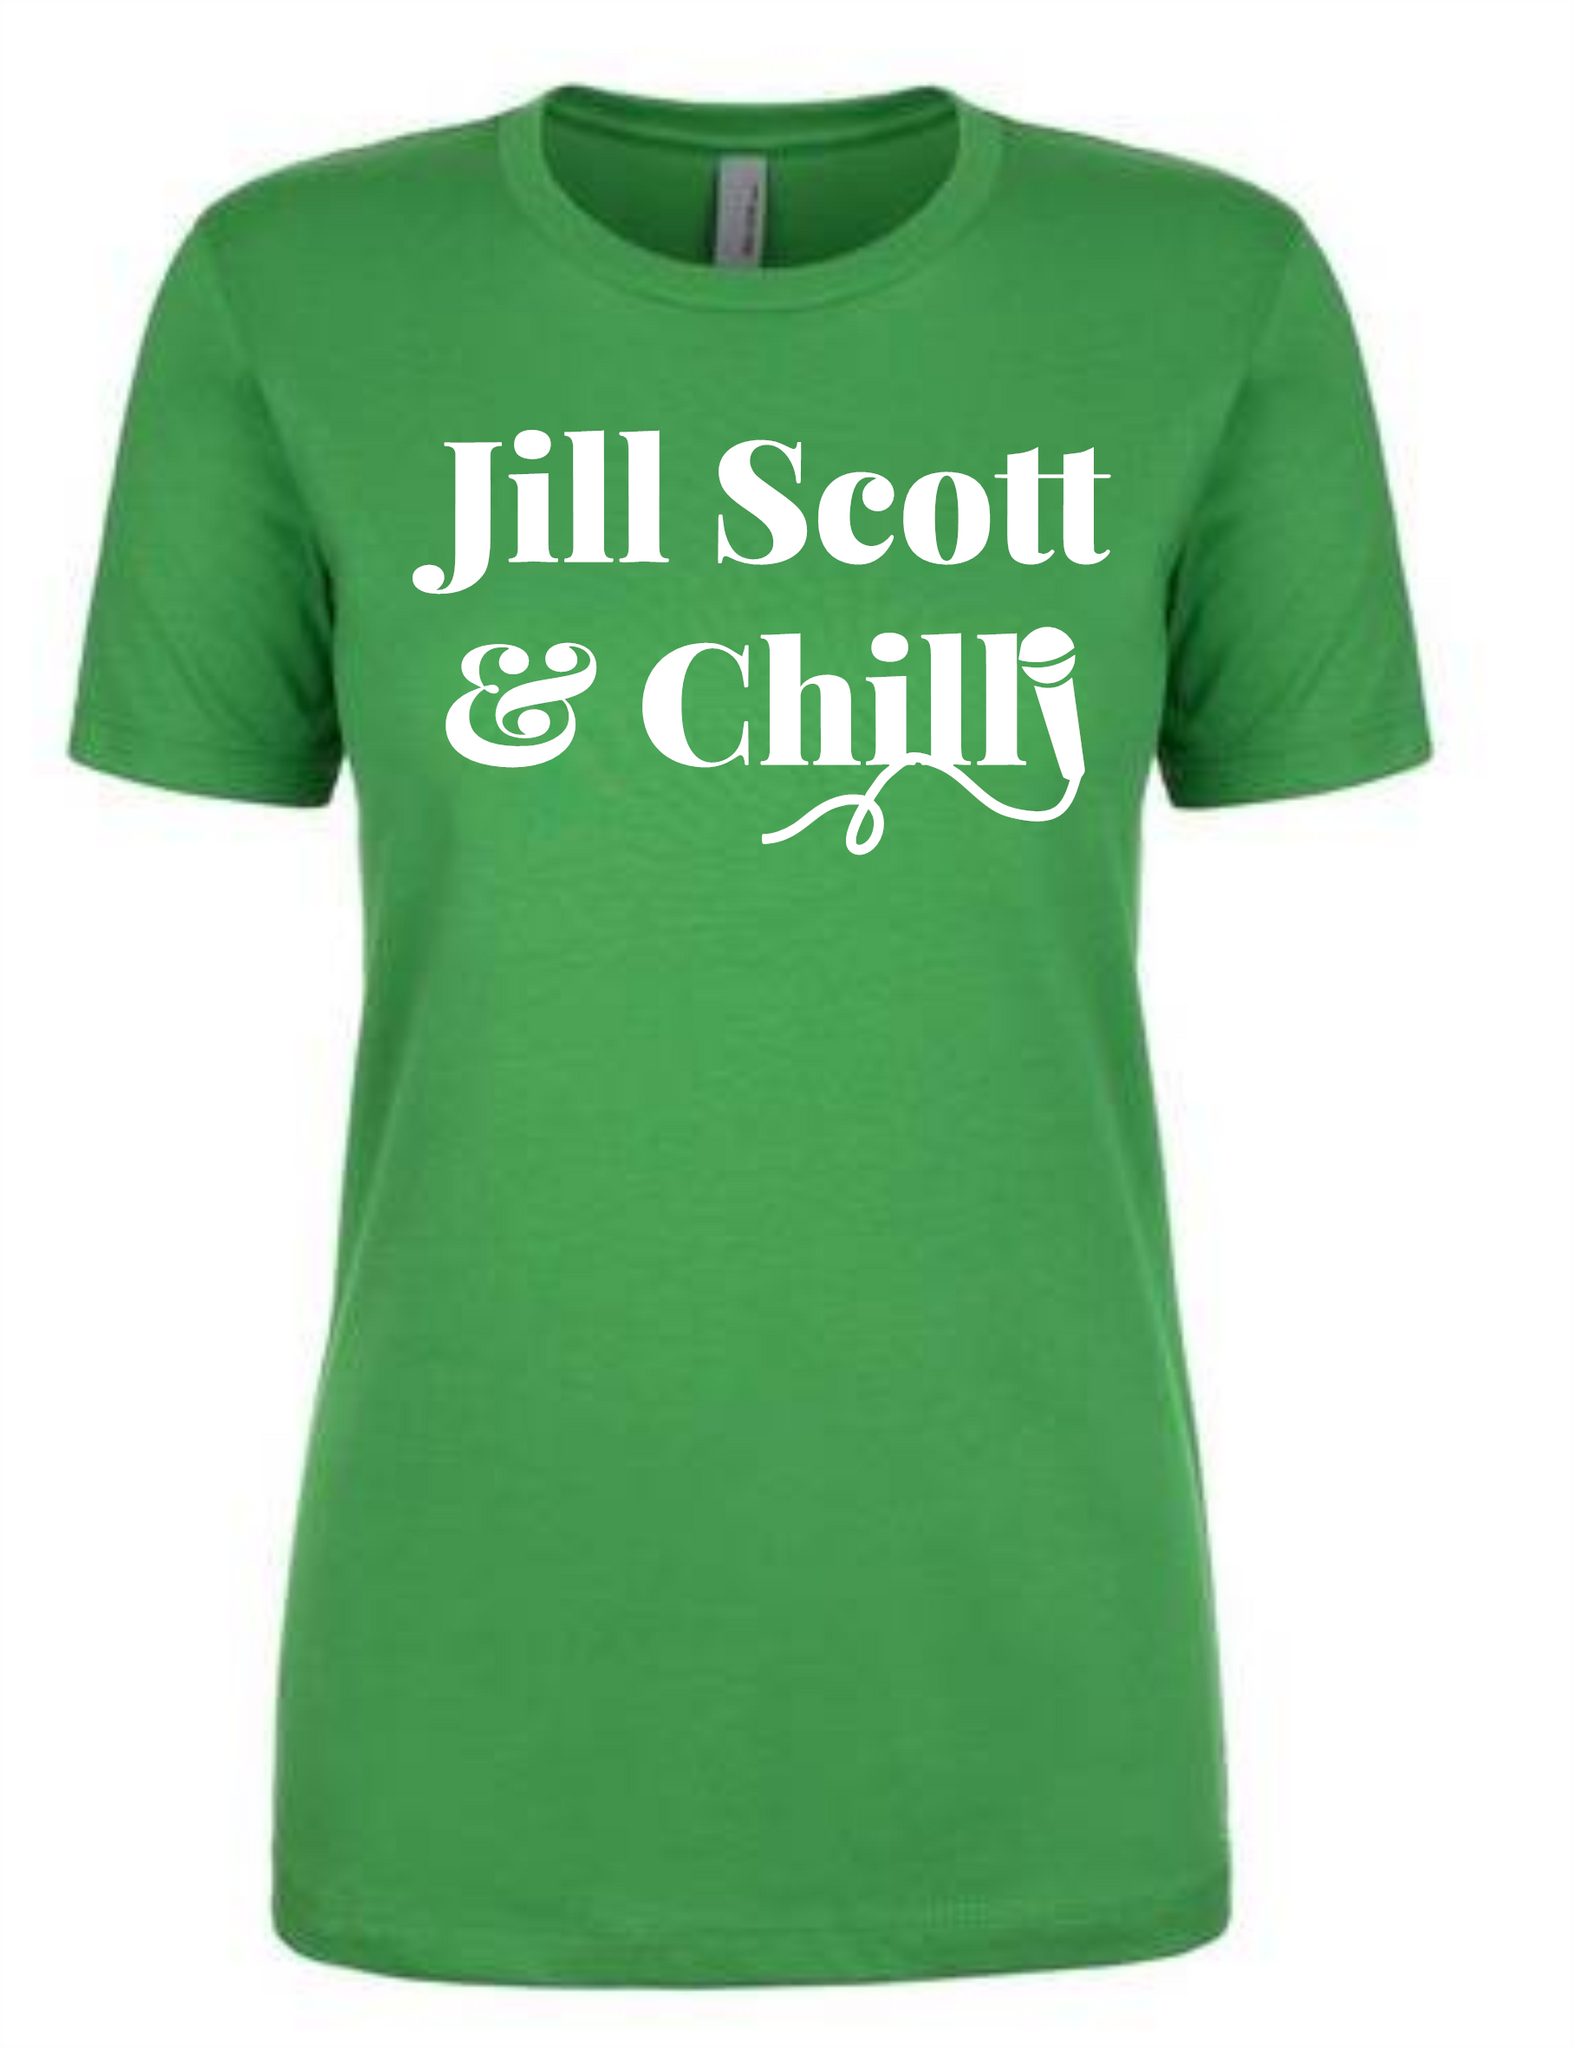 Jill Scott & Chill